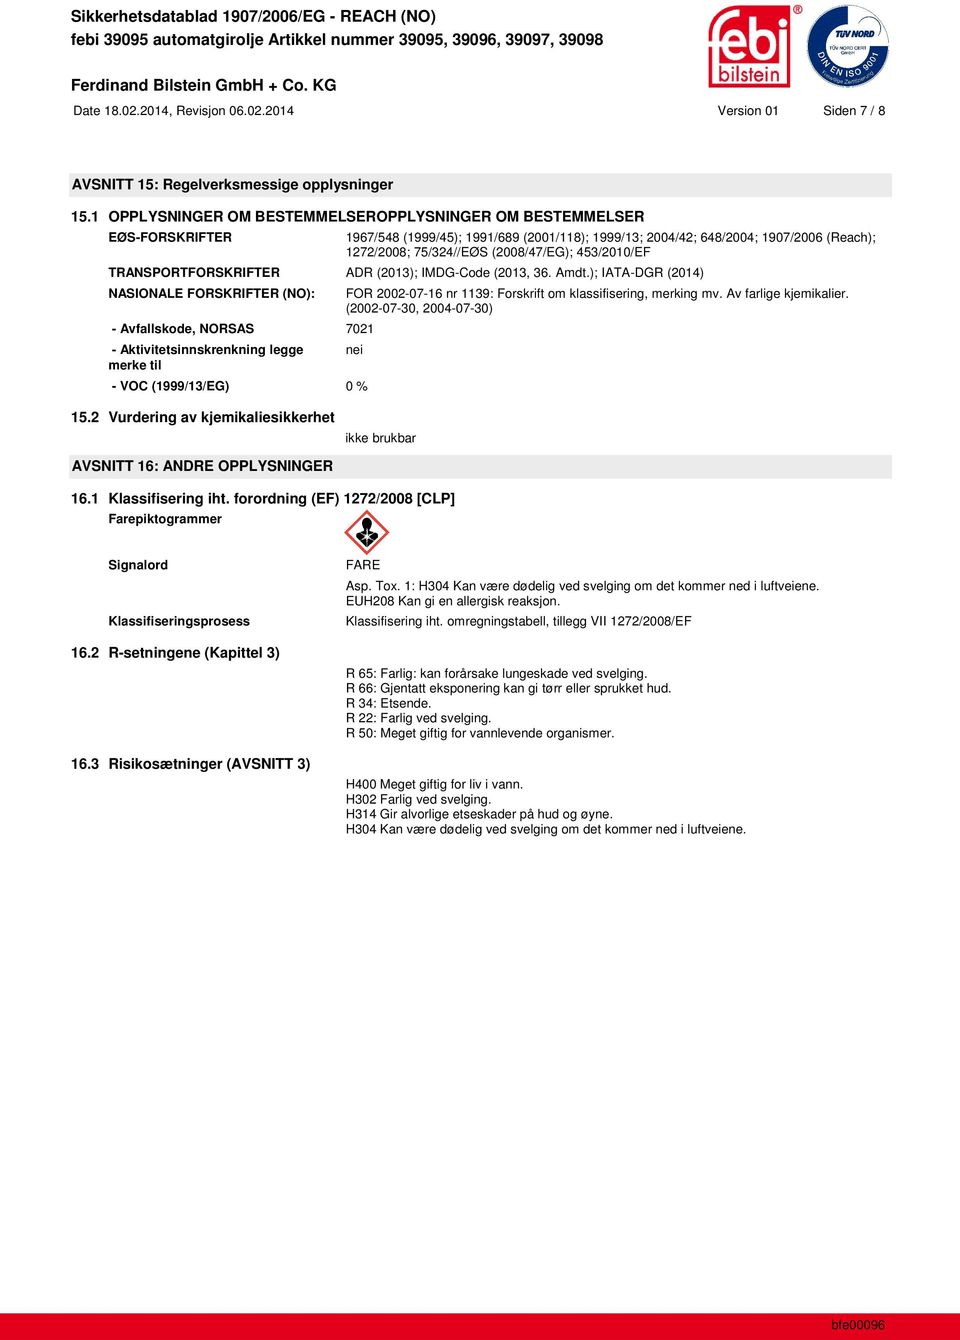 453/2010/EF TRANSPORTFORSKRIFTER ADR (2013); IMDG-Code (2013, 36. Amdt.